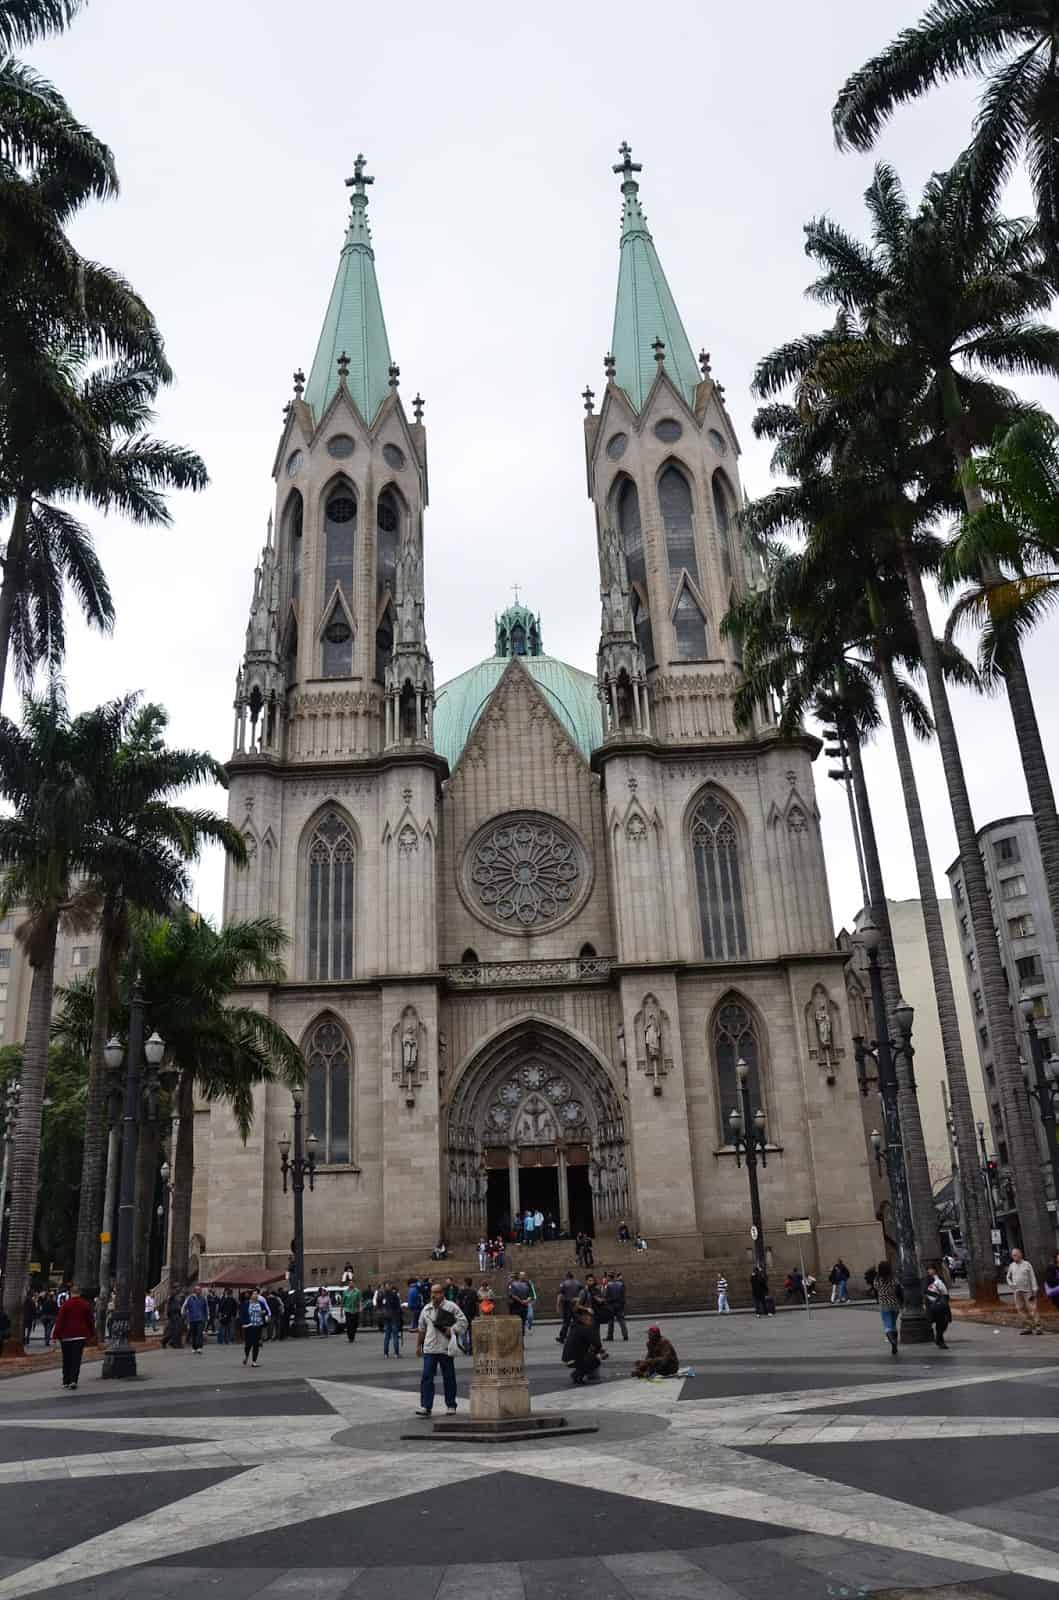 Catedral Metropolitana in São Paulo, Brazil